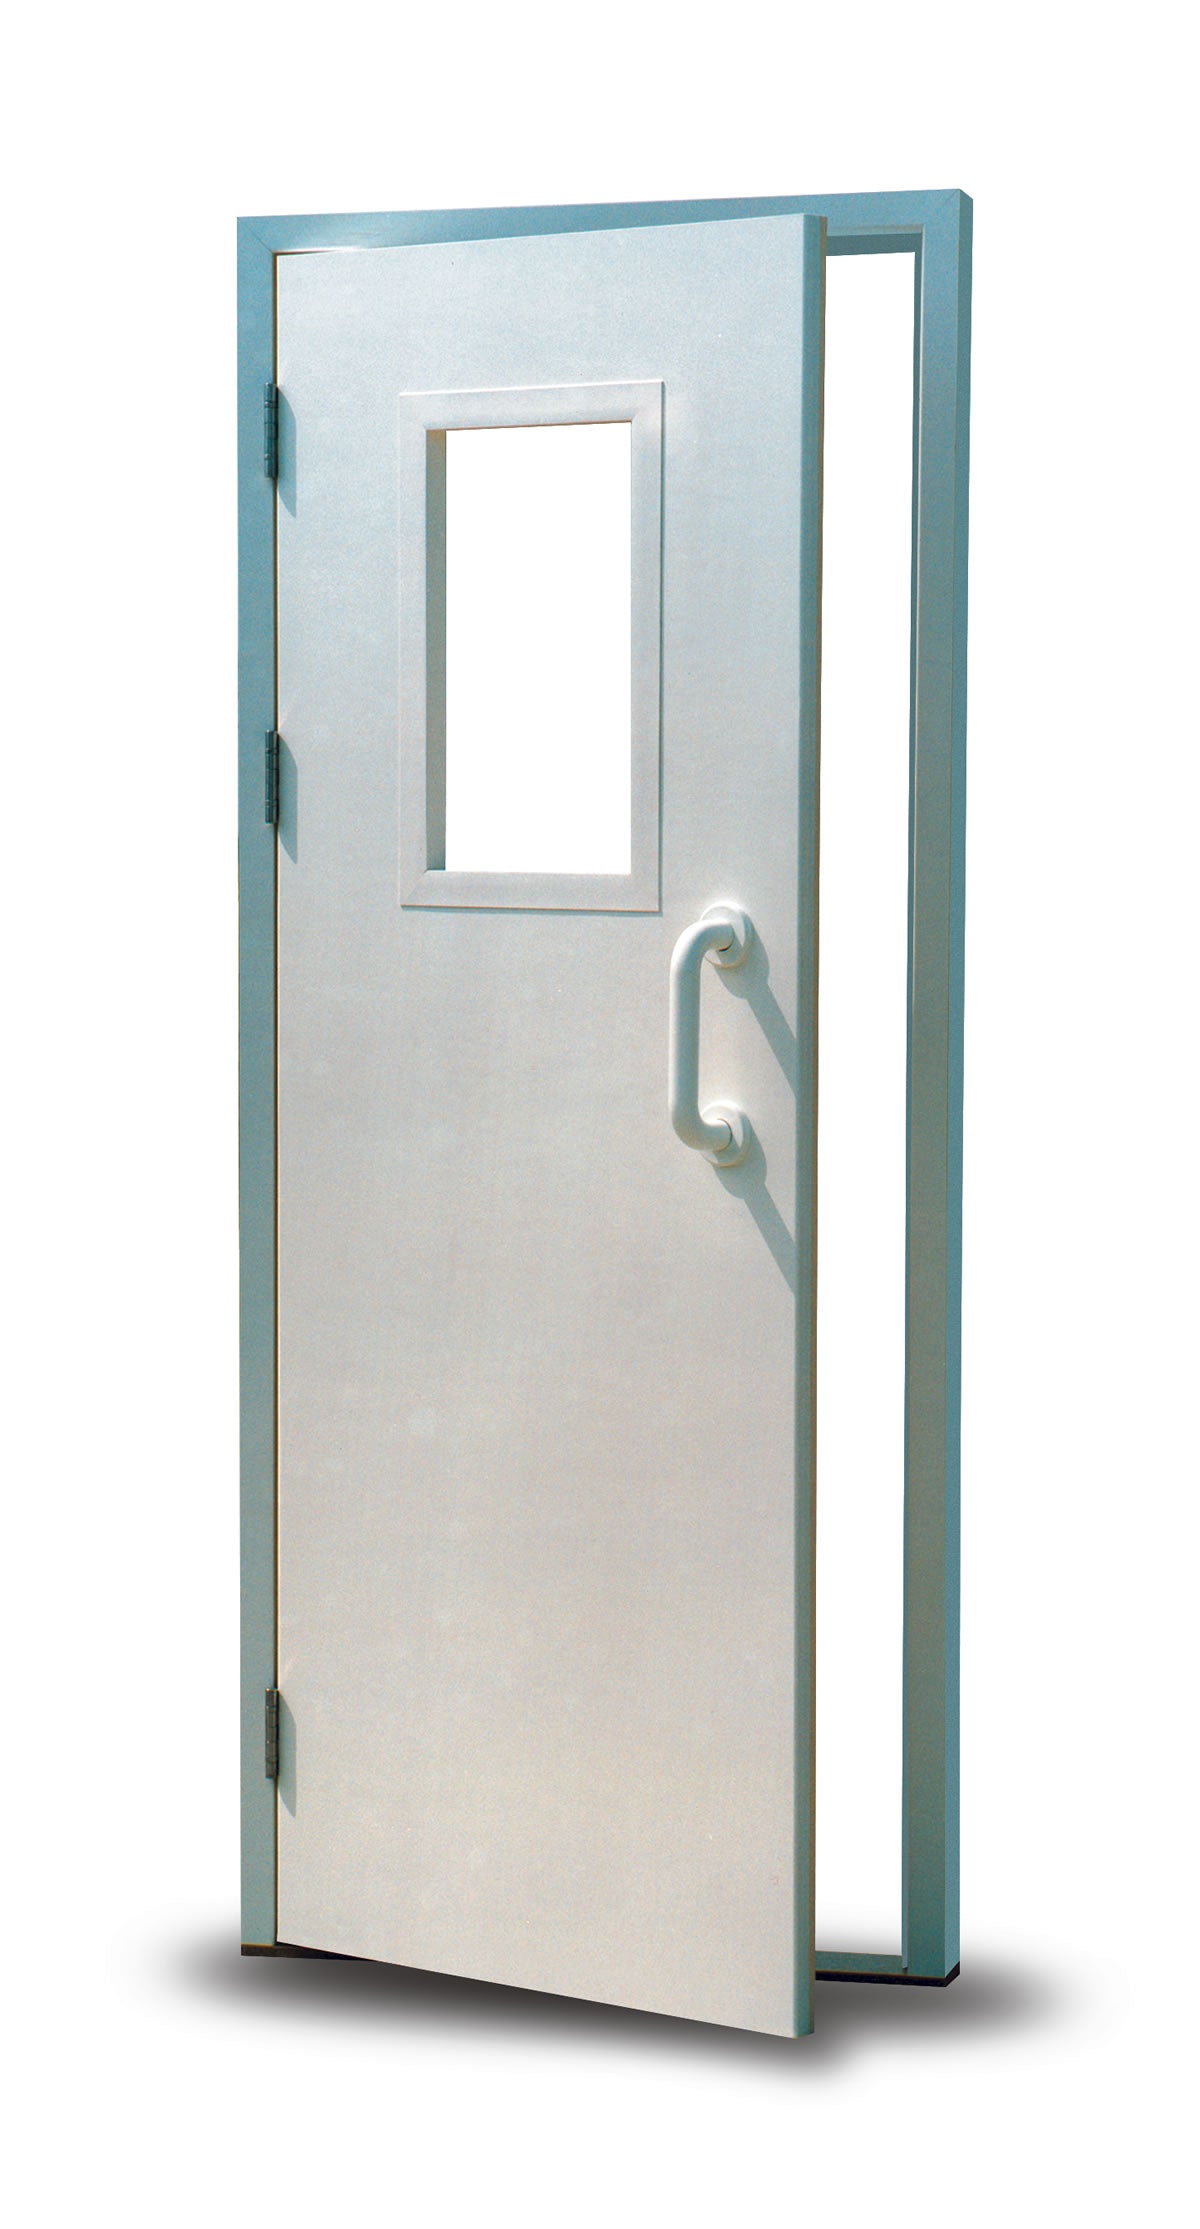 Altro Fortis Door Protection - Contract Flooring